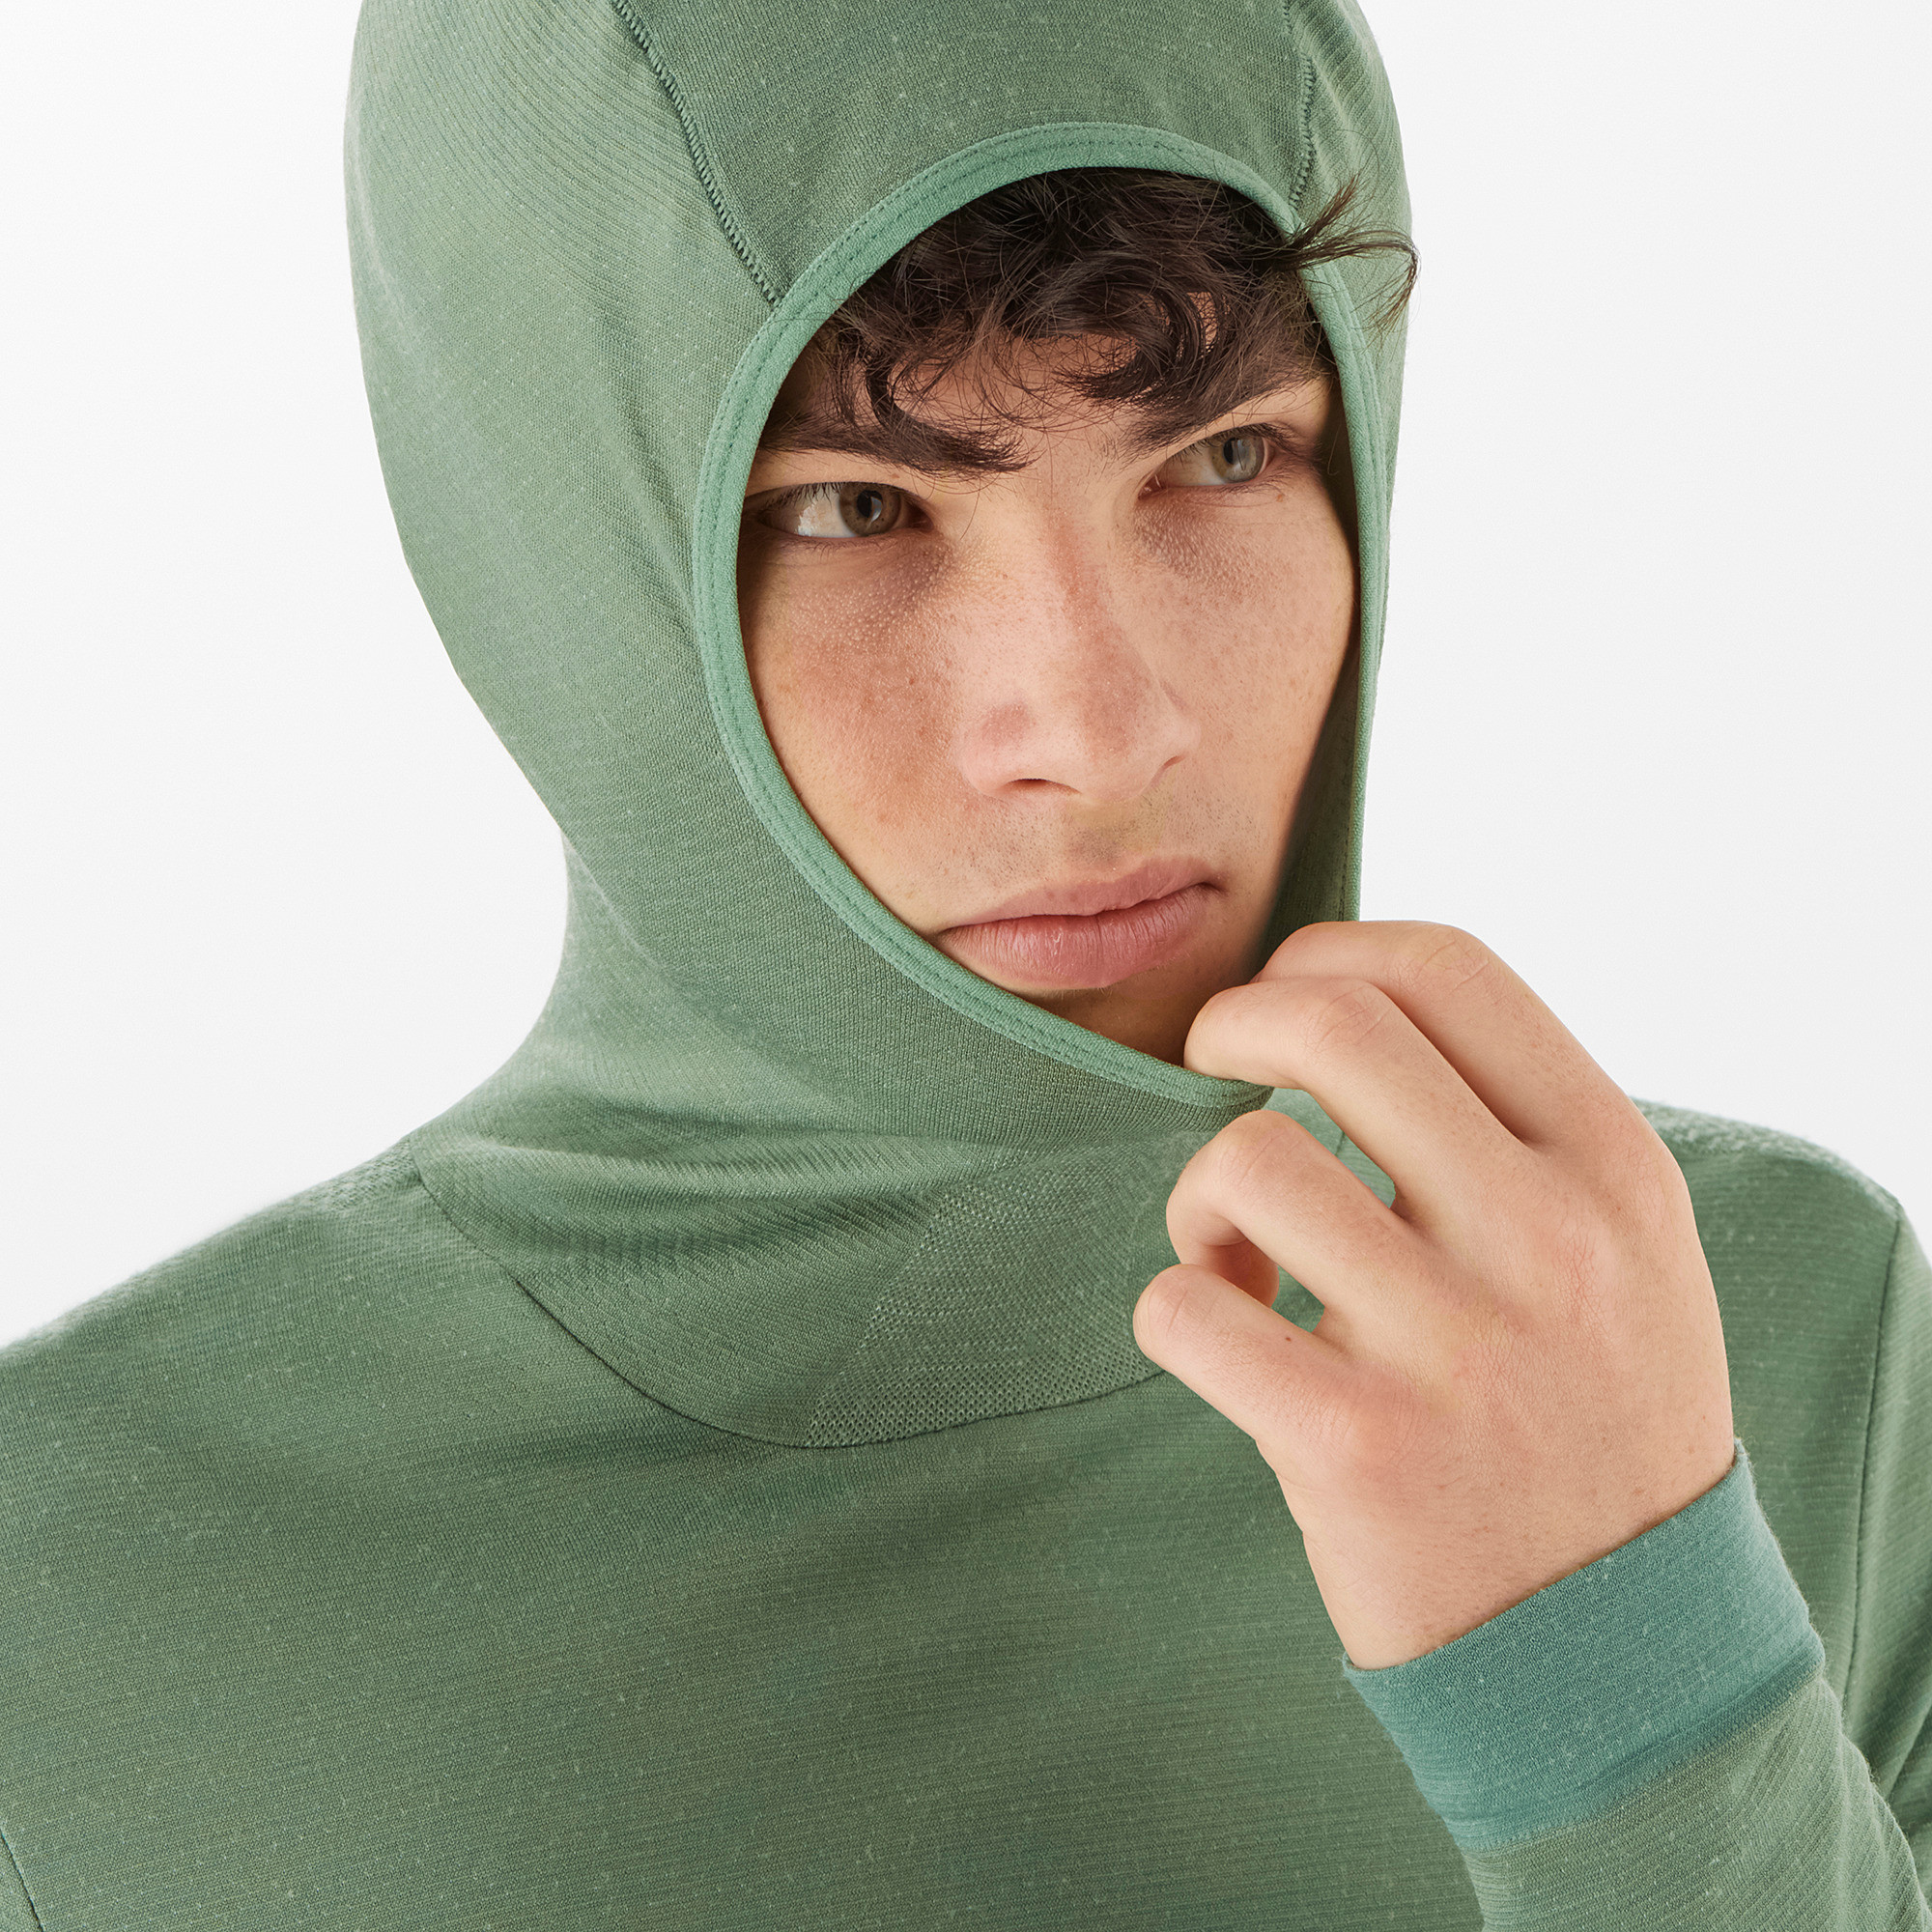 Men's Essential Wool Hooded Green